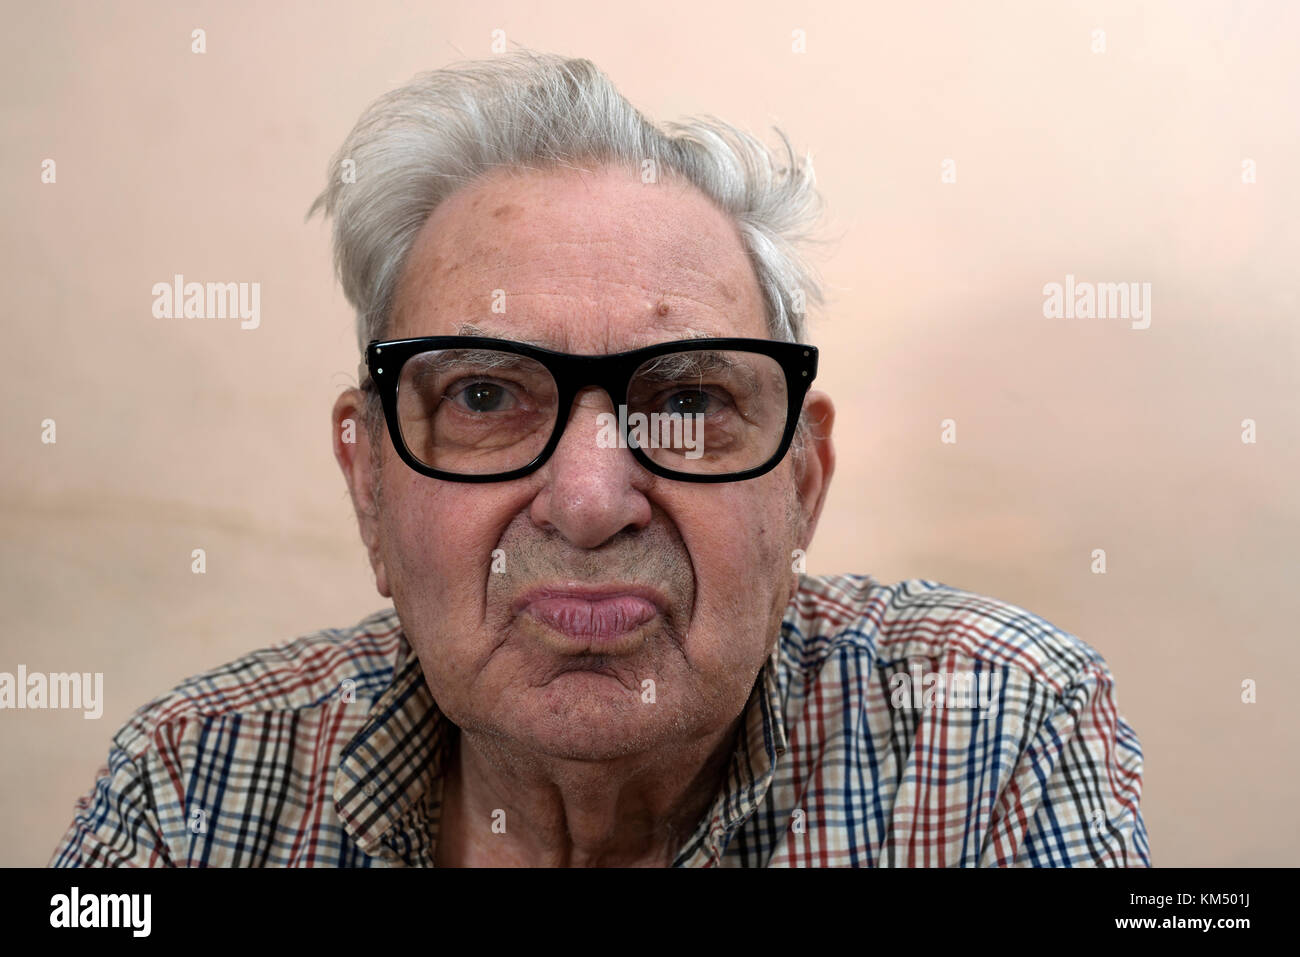 Hombre de edad con diabetes tipo 2 Foto de stock